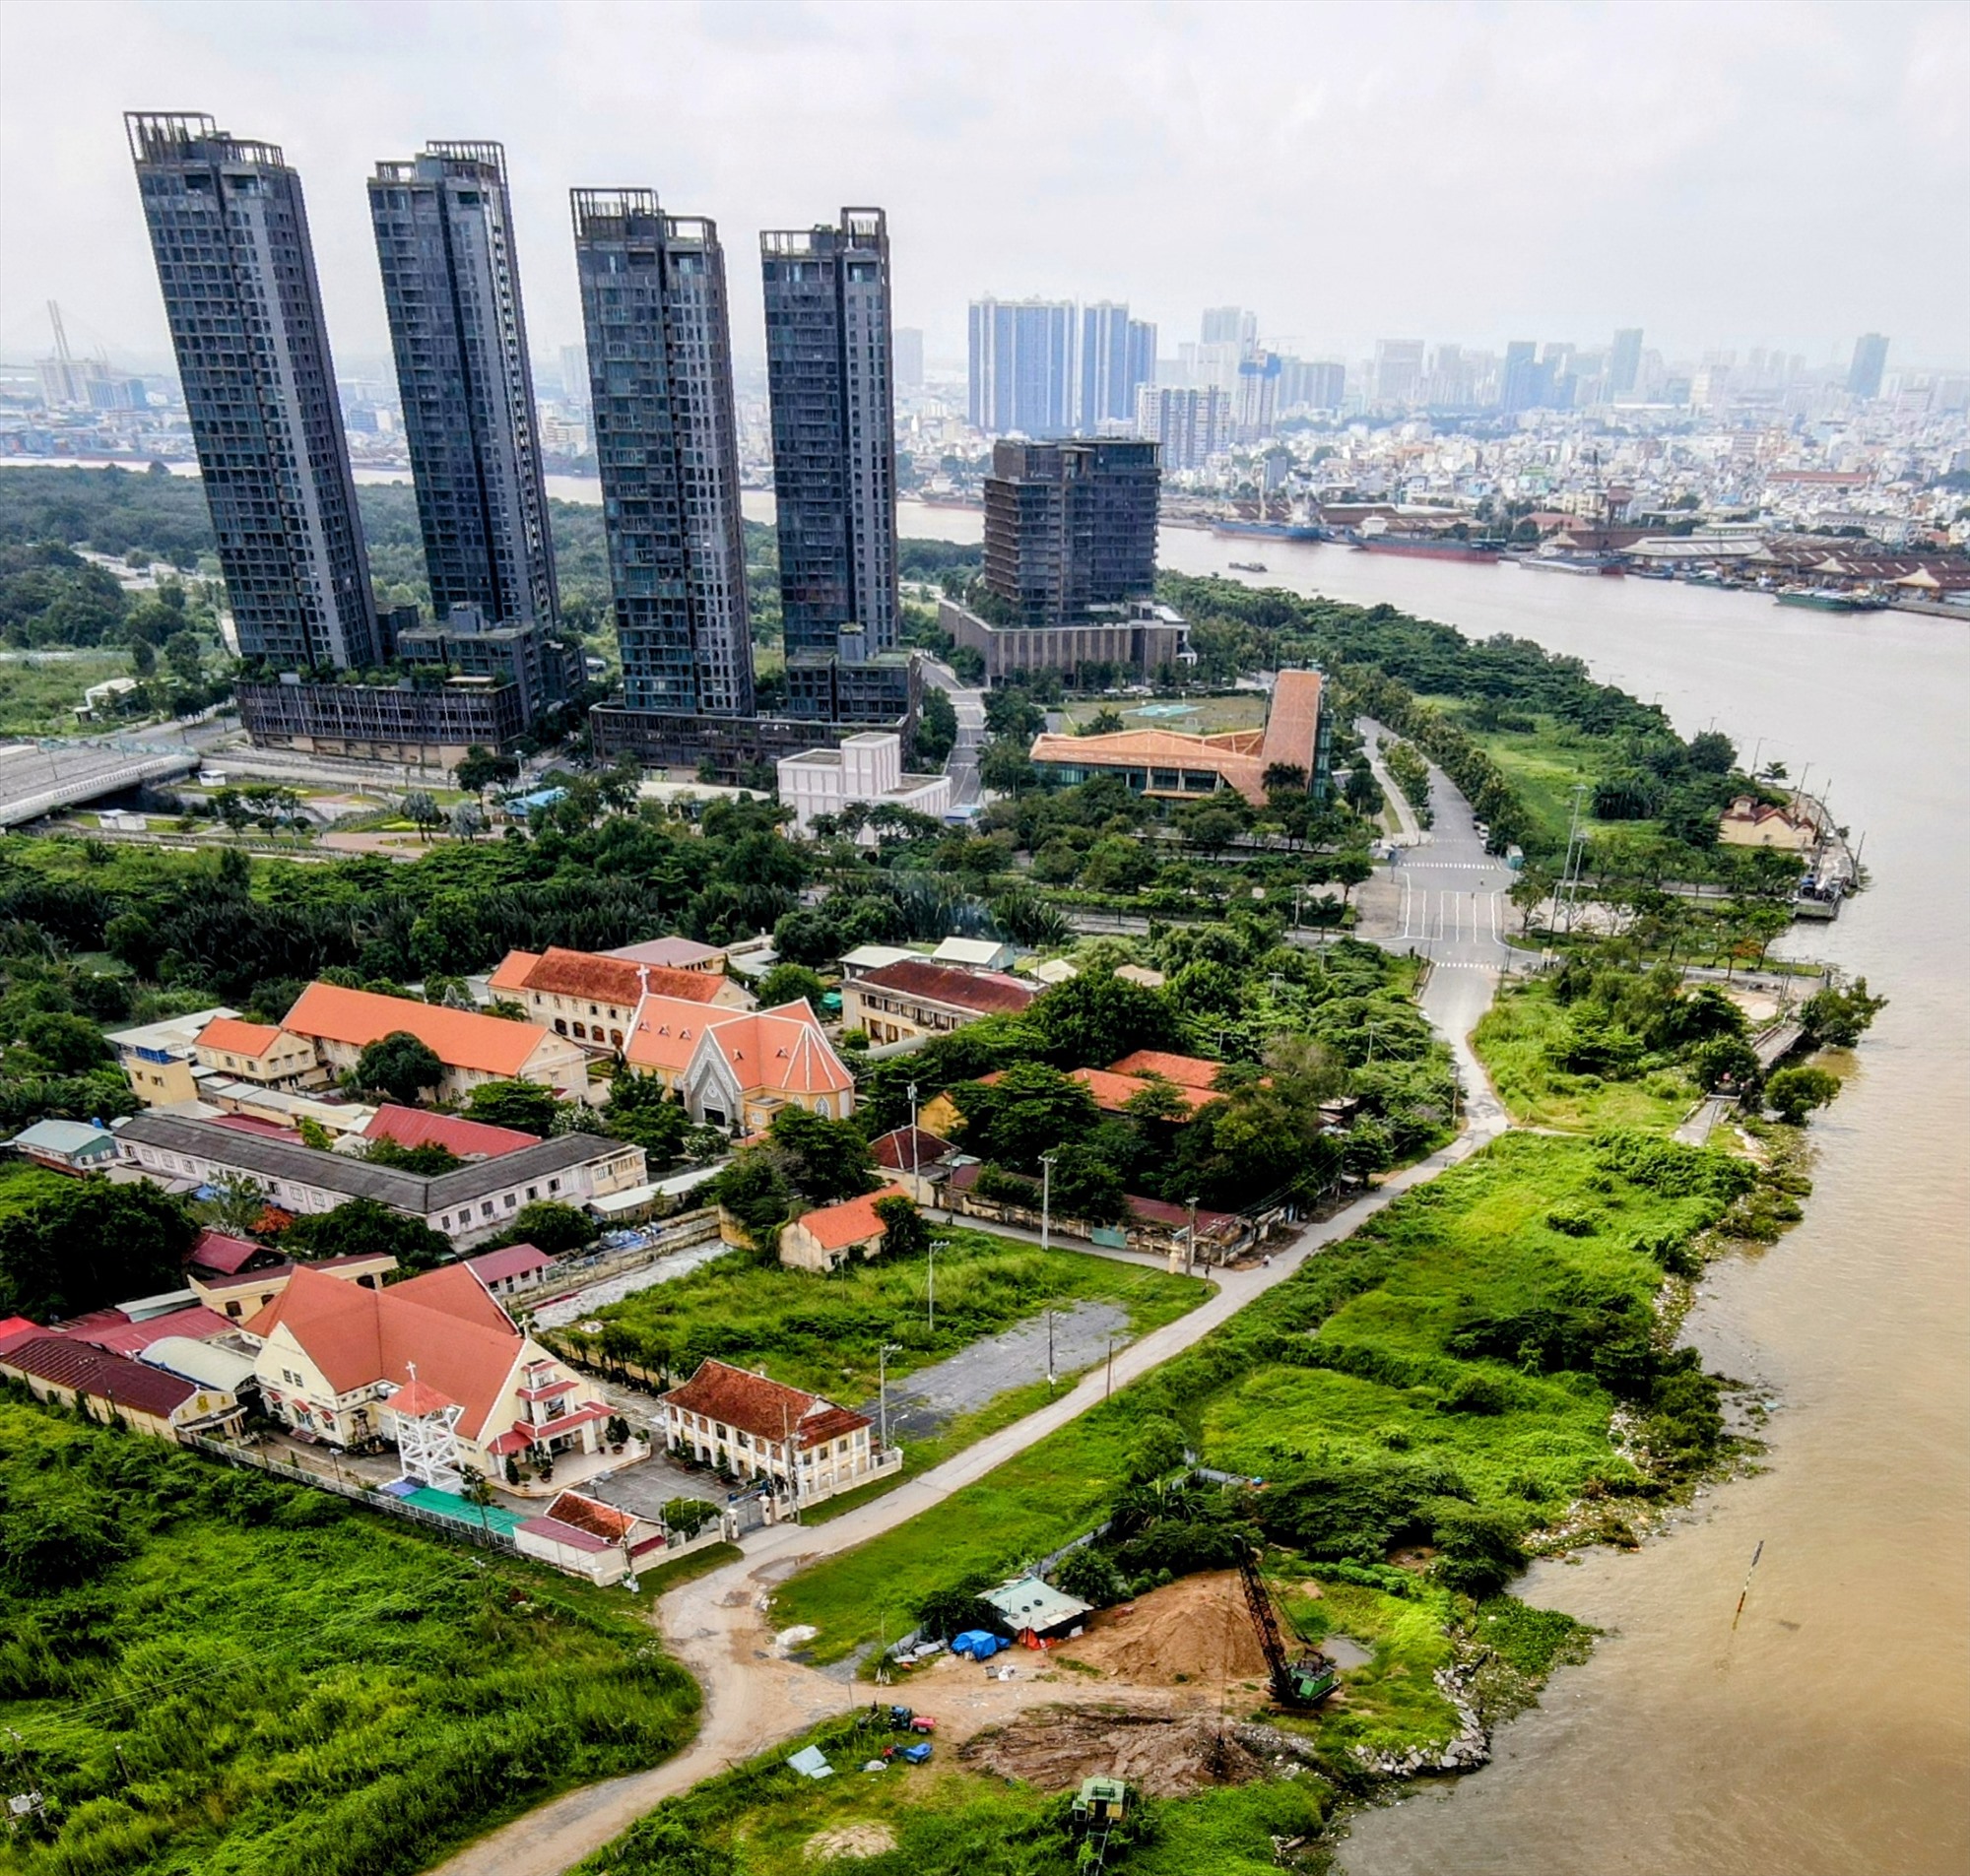  Cùng có vị thế đẹp dọc sông Sài Gòn nhưng khu vực này hiện chỉ có cỏ cây.